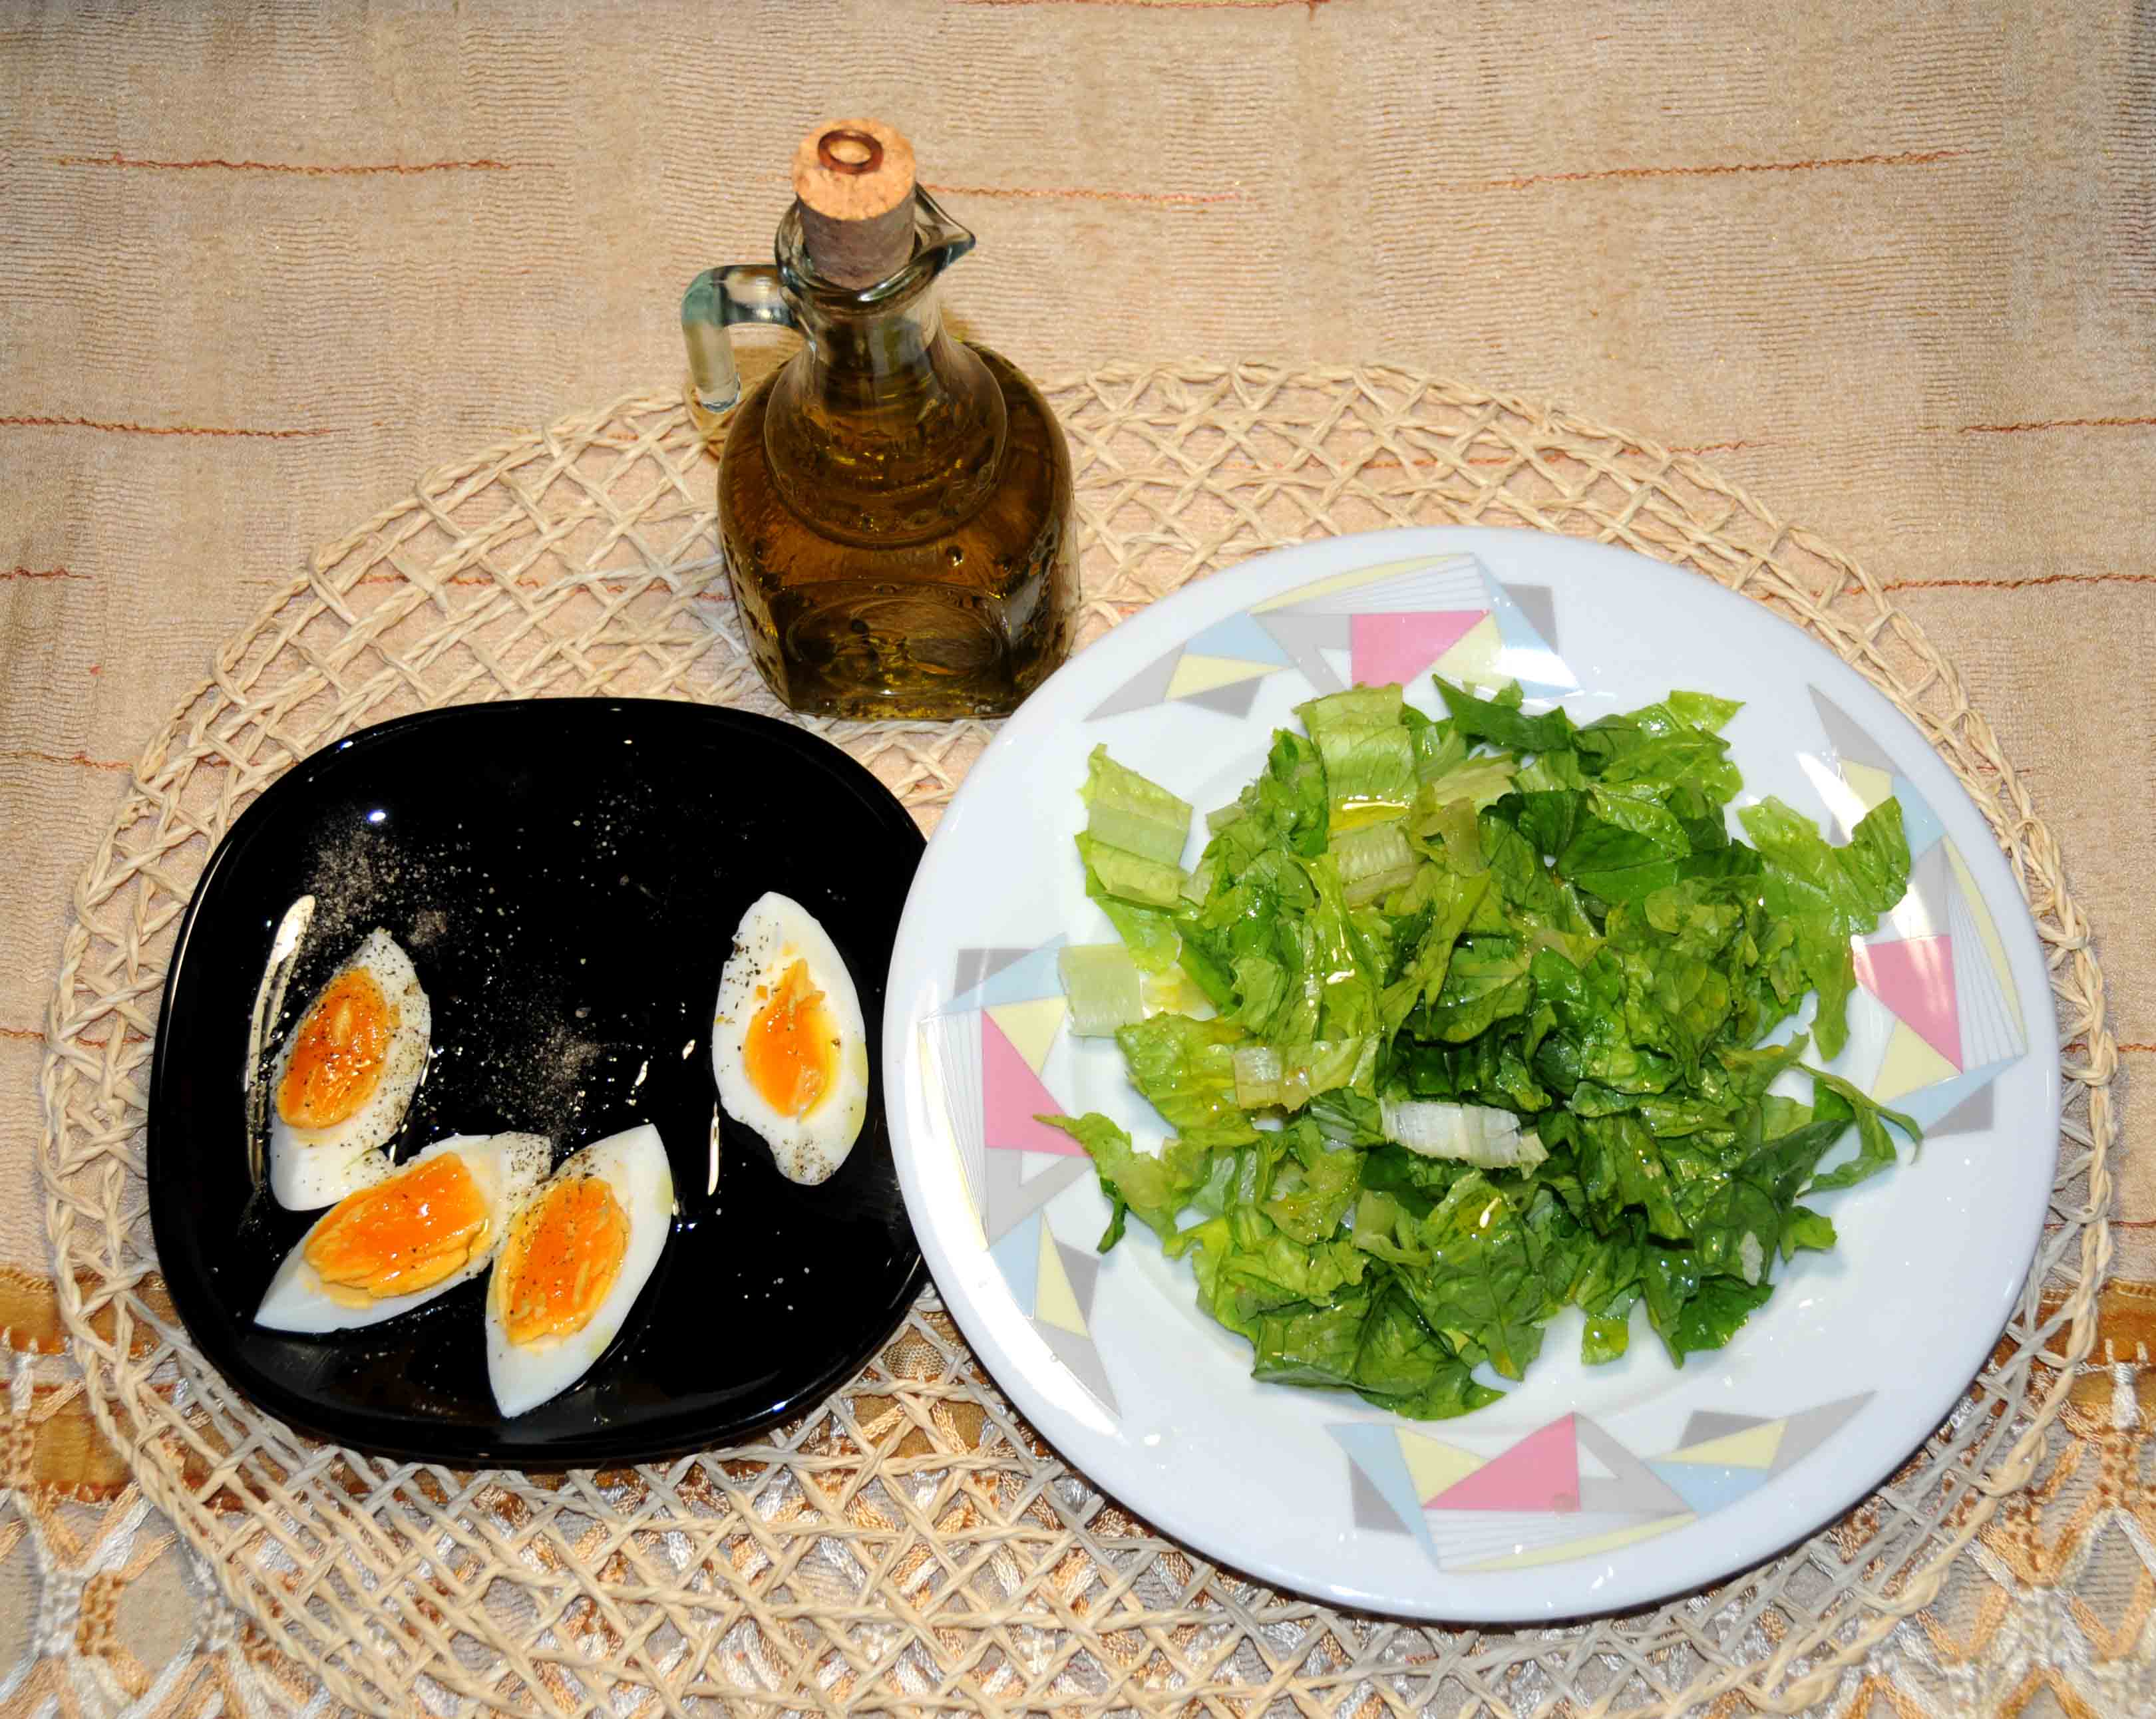 1 σαλάτα μαρούλι με μια κουταλιά της σούπας λάδι και 1 αυγό βραστό - 1 lettuce salad with one tablespoon of oil and 1 boiled egg